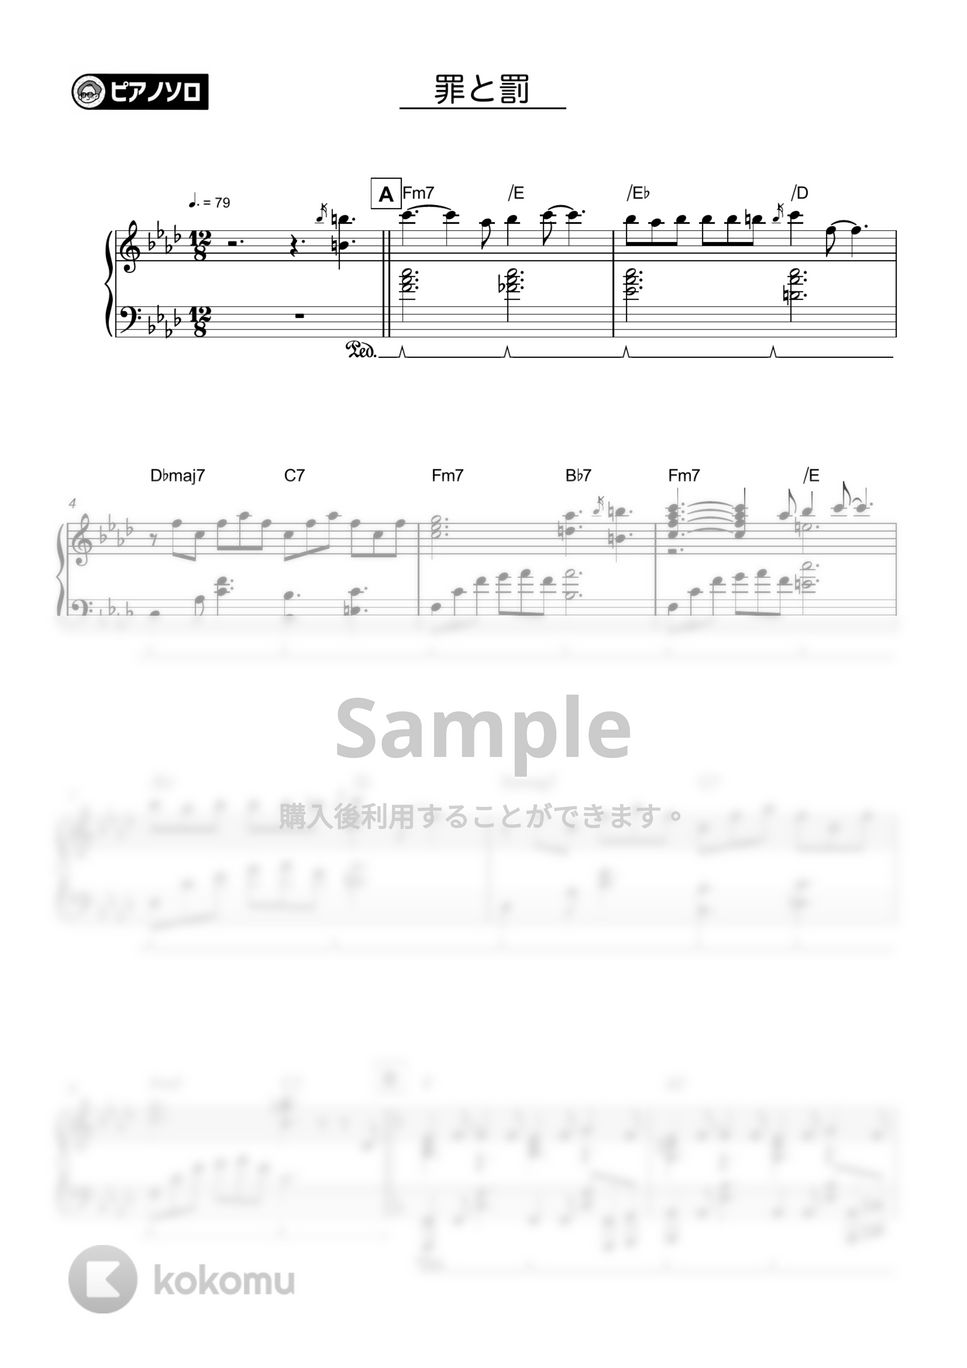 椎名林檎 - 罪と罰 by シータピアノ